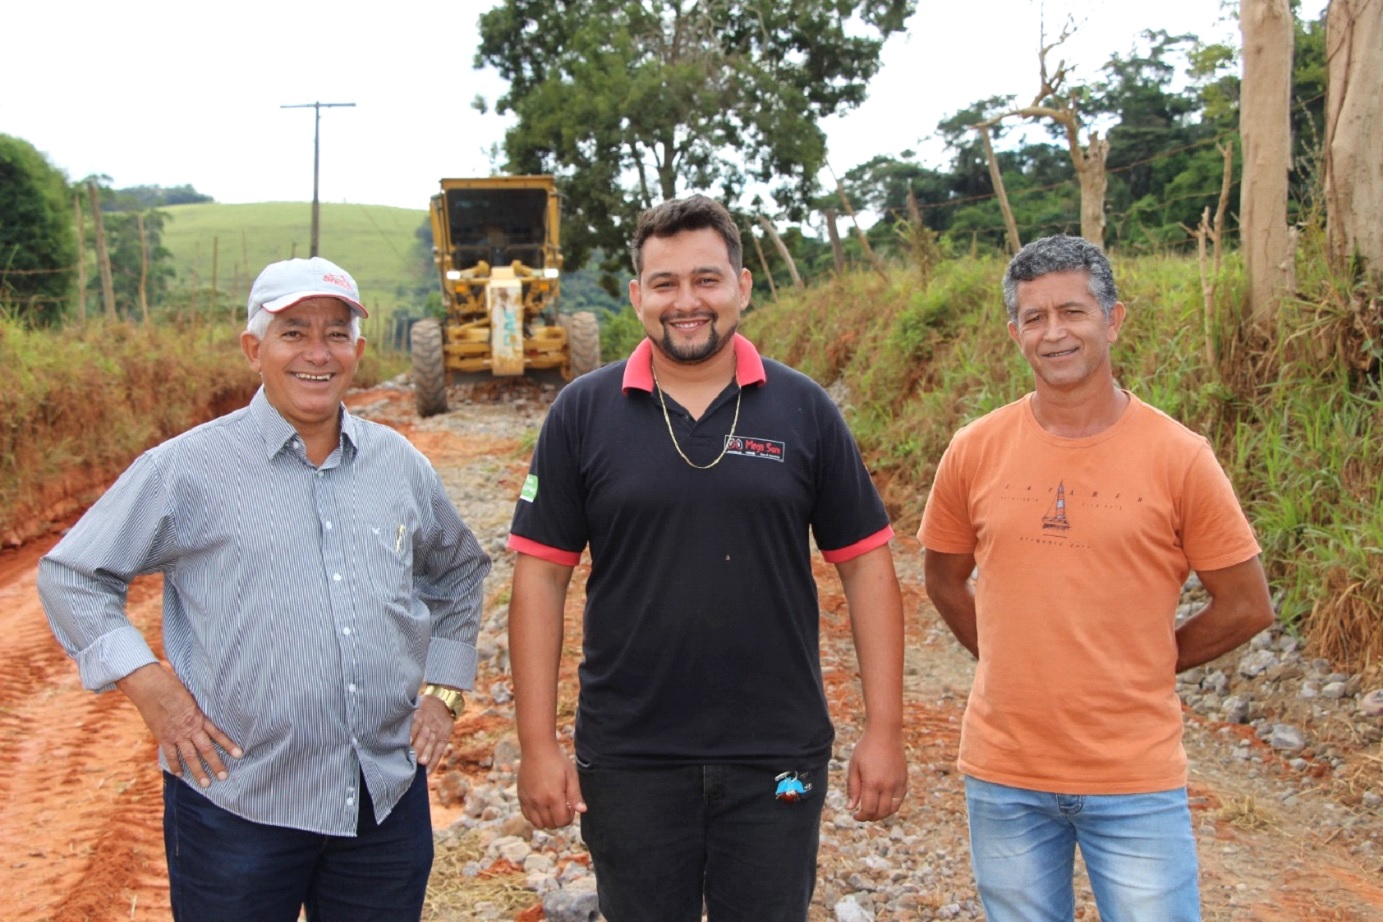 Prefeito e vice acompanham obras de manutenção das estradas em Vermelho Novo